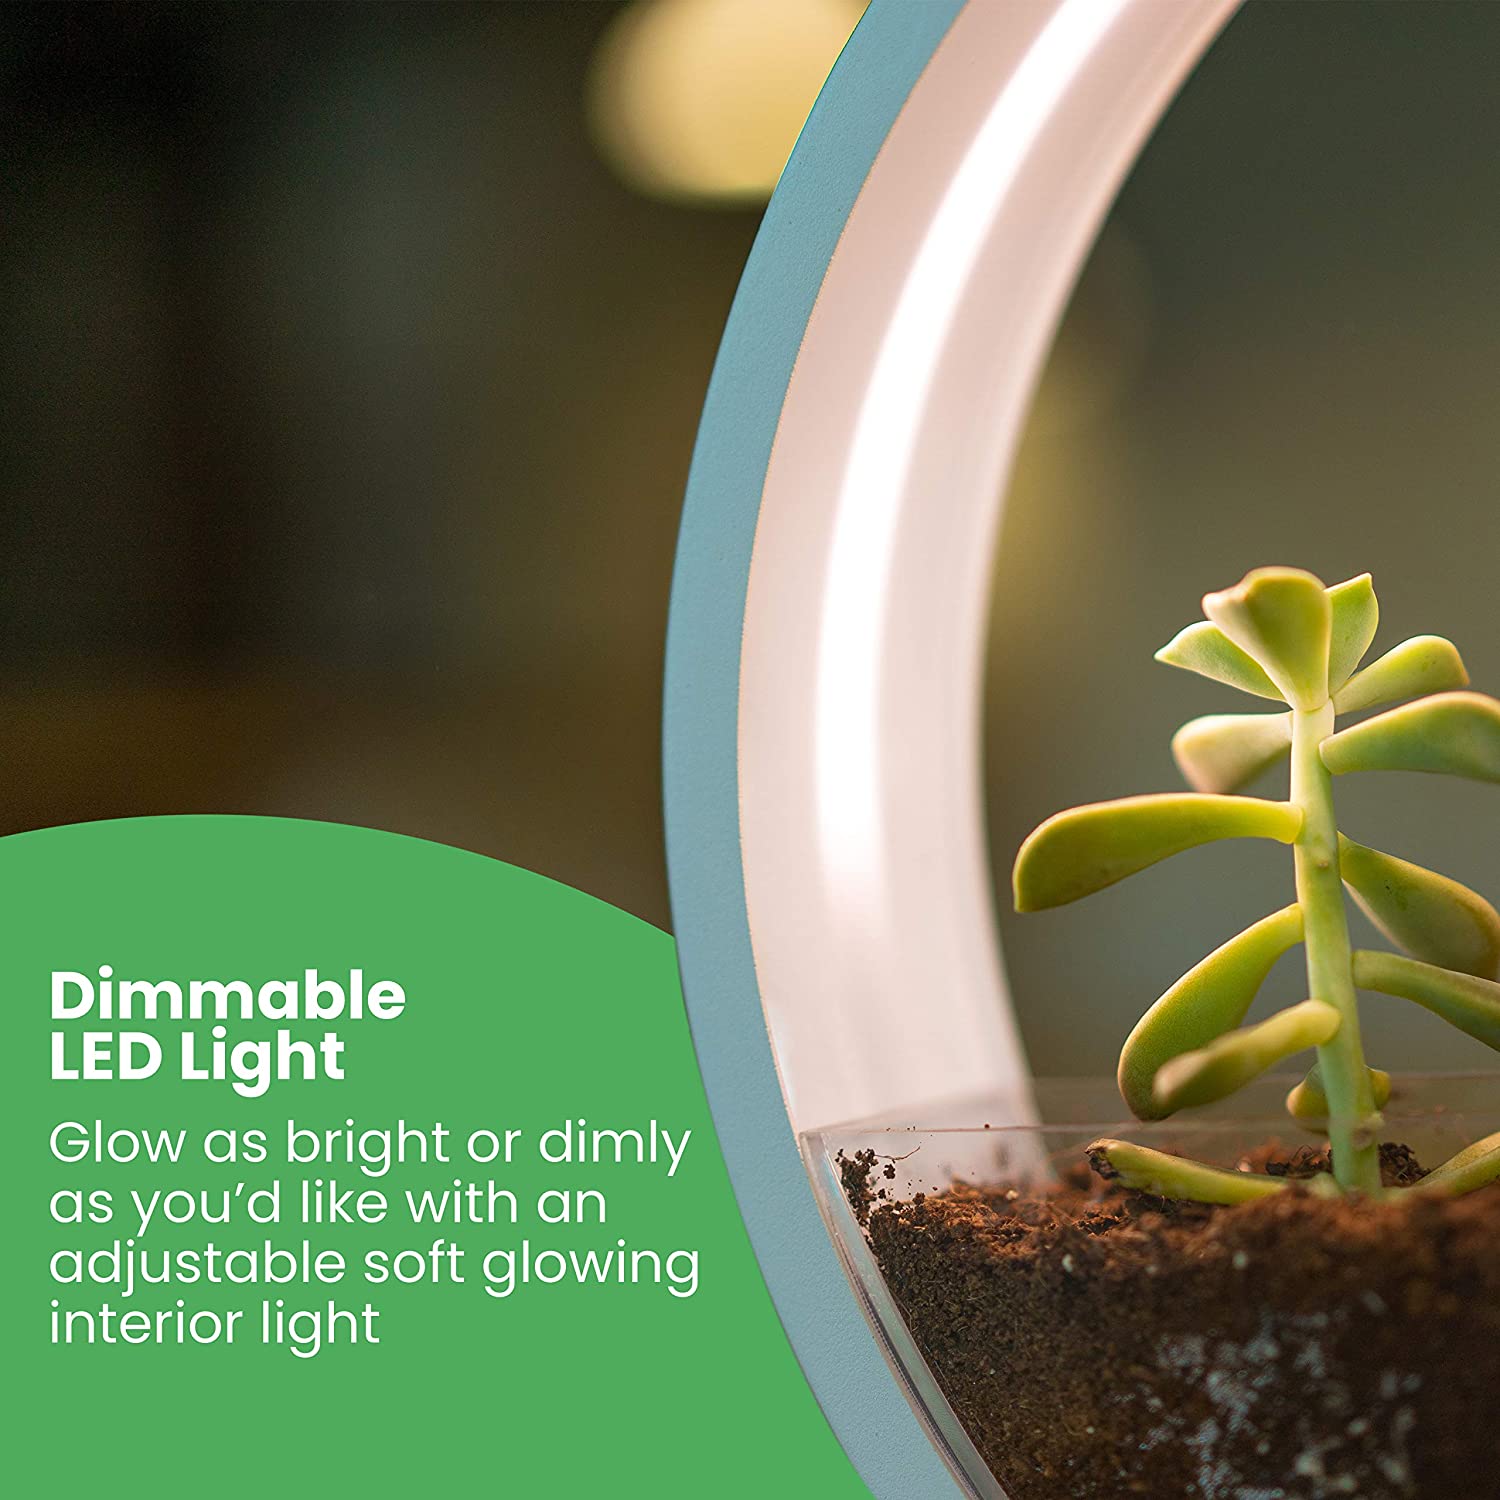 Hệ thống đèn led Dimmable chiếu sáng hầu như cả ngày để giúp cây trồng phát triển tốt ngay cả khi không có đủ ánh sáng.